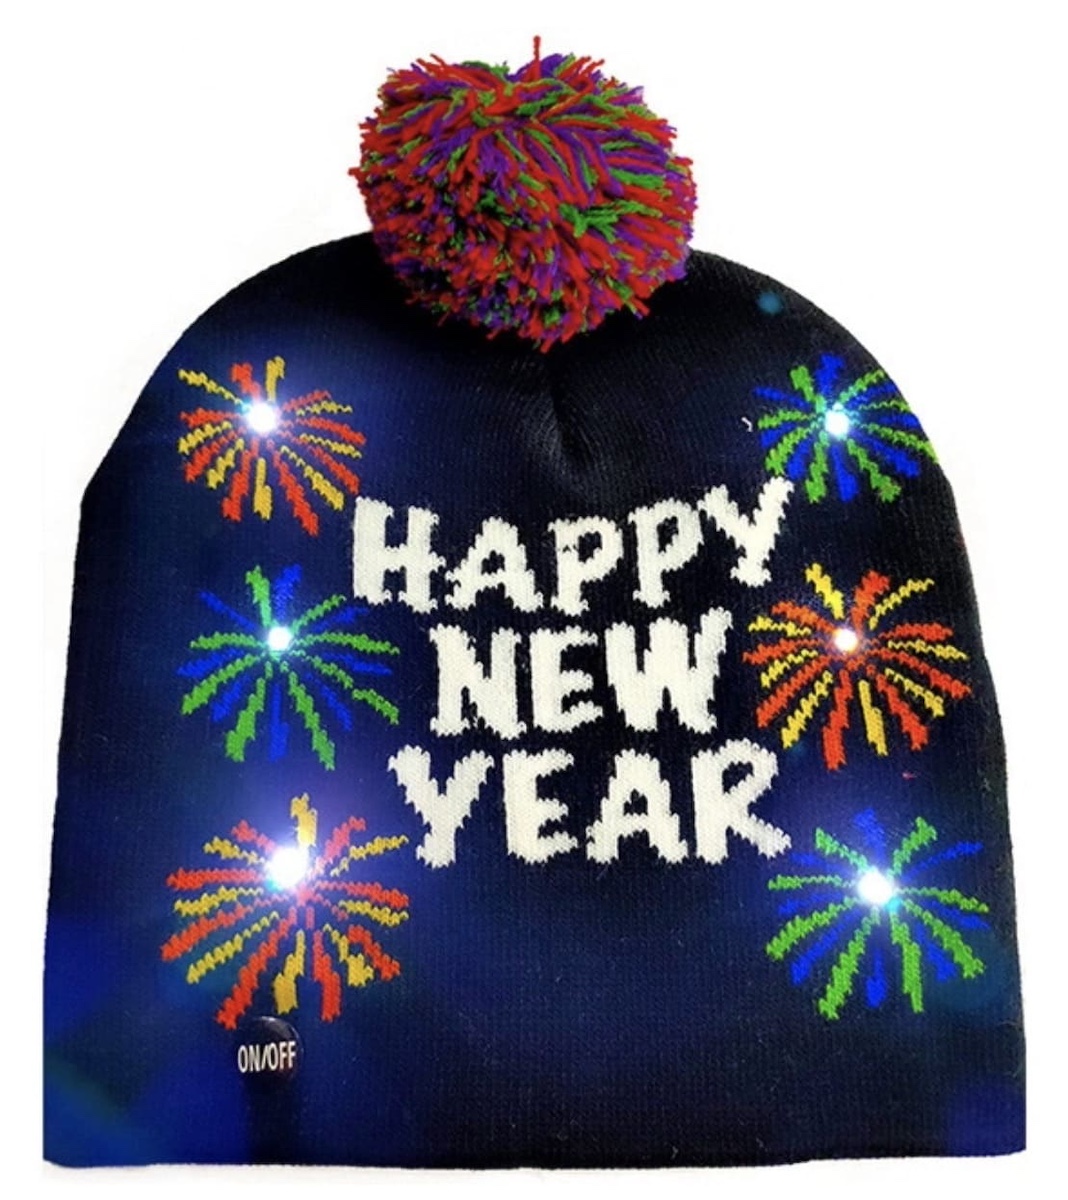 Winter knitted Christmas light-up hat na may LED bulbs - MALIGAYANG BAGONG TAON